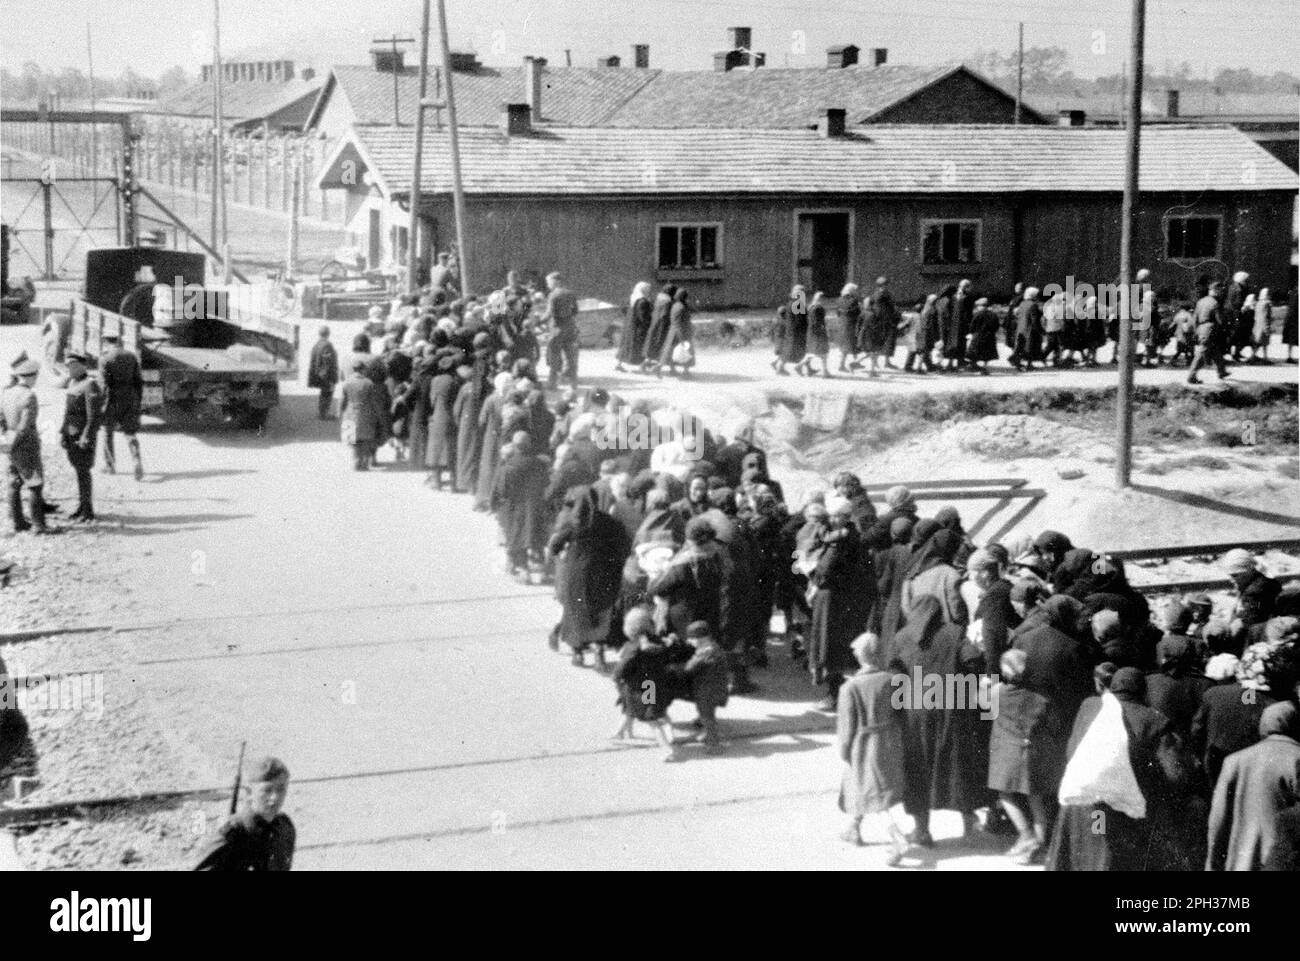 Jüdische Frauen und Kinder aus Ungarn gingen in Richtung Gaskammer, Auschwitz II, Mai/Juni 1944. Nach dem Auswahlprozess auf dem Bahnhofsplattform wurden die zum Sterben verurteilten Personen direkt zu den Gaskammern geführt. Stockfoto